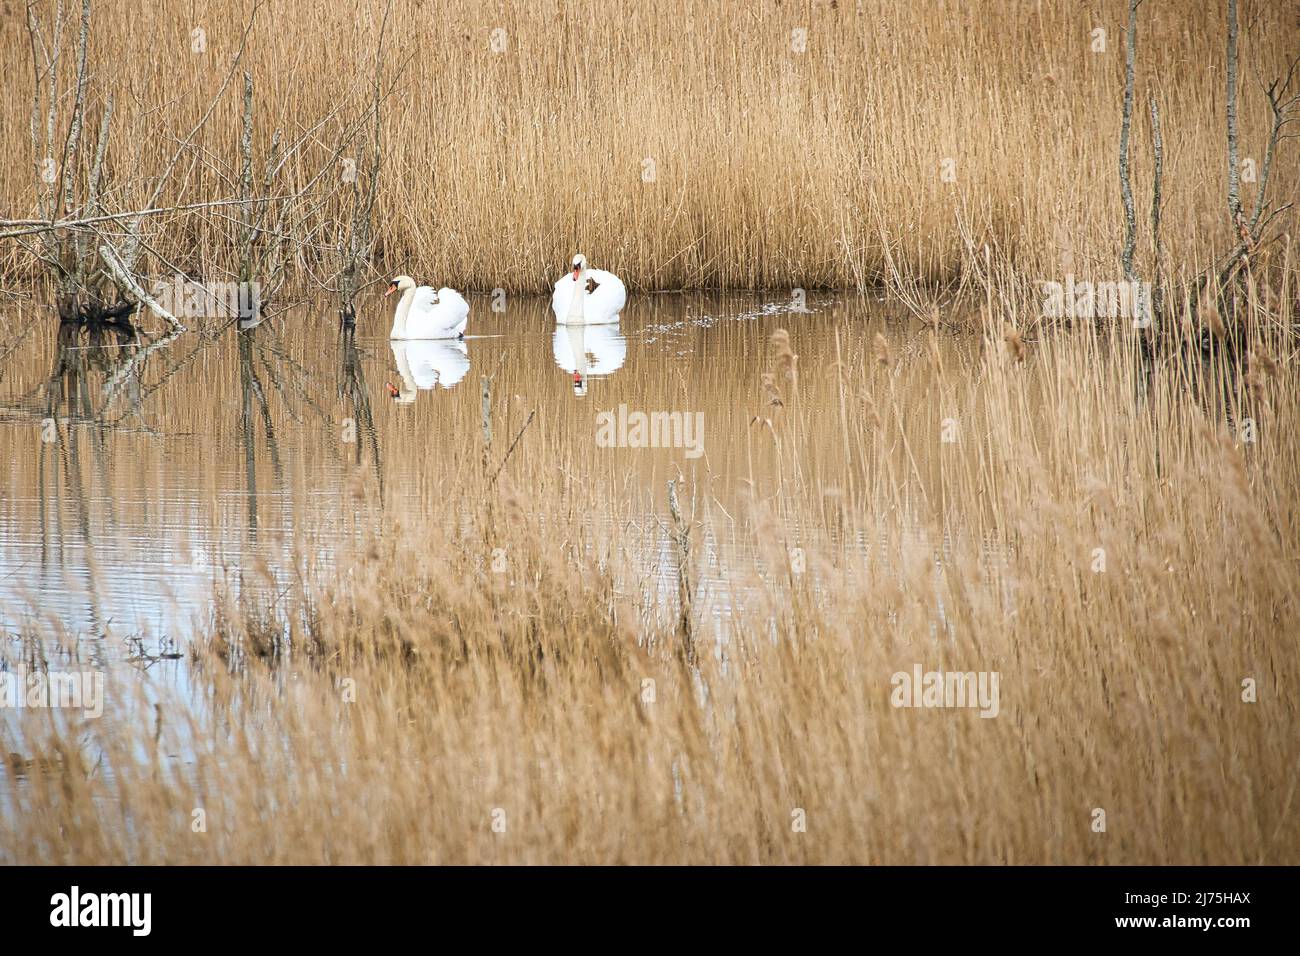 coppia di cigni nel parco naturale di darss. tempo di accoppiamento di uccelli. cigni muti con piumaggio bianco. foto animali nella natura Foto Stock